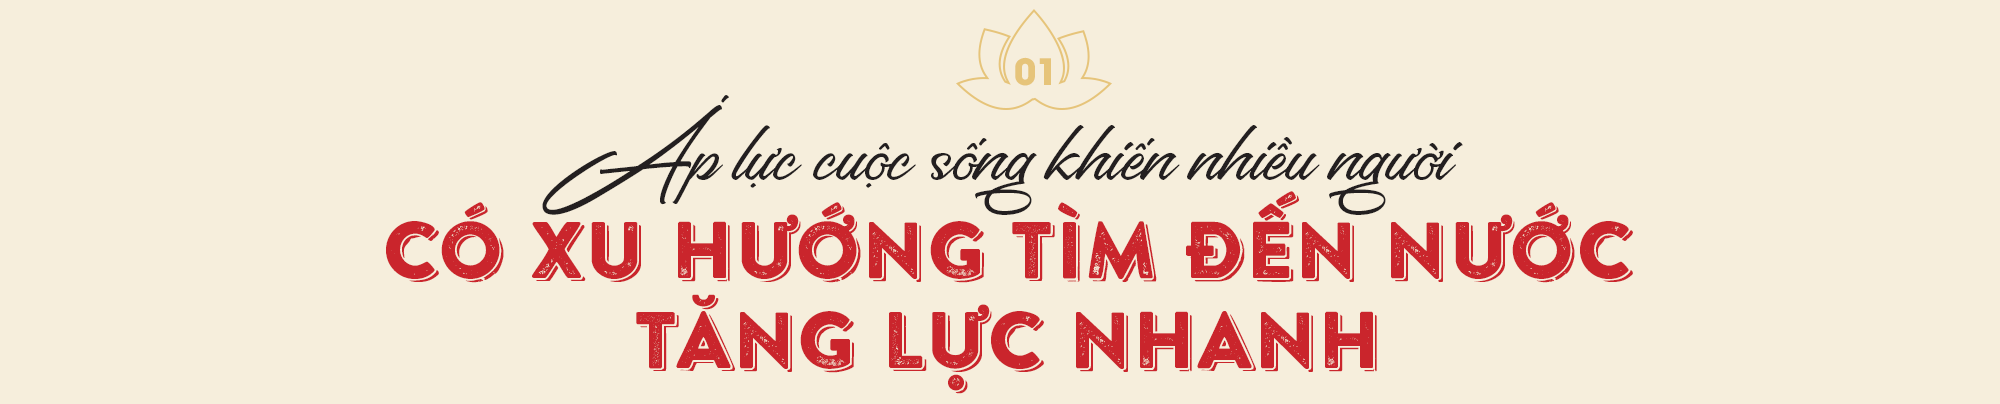 Dấu ấn trong hành trình hơn 20 năm Dược phẩm Hoa Linh chăm sóc sức khỏe người Việt - Ảnh 1.